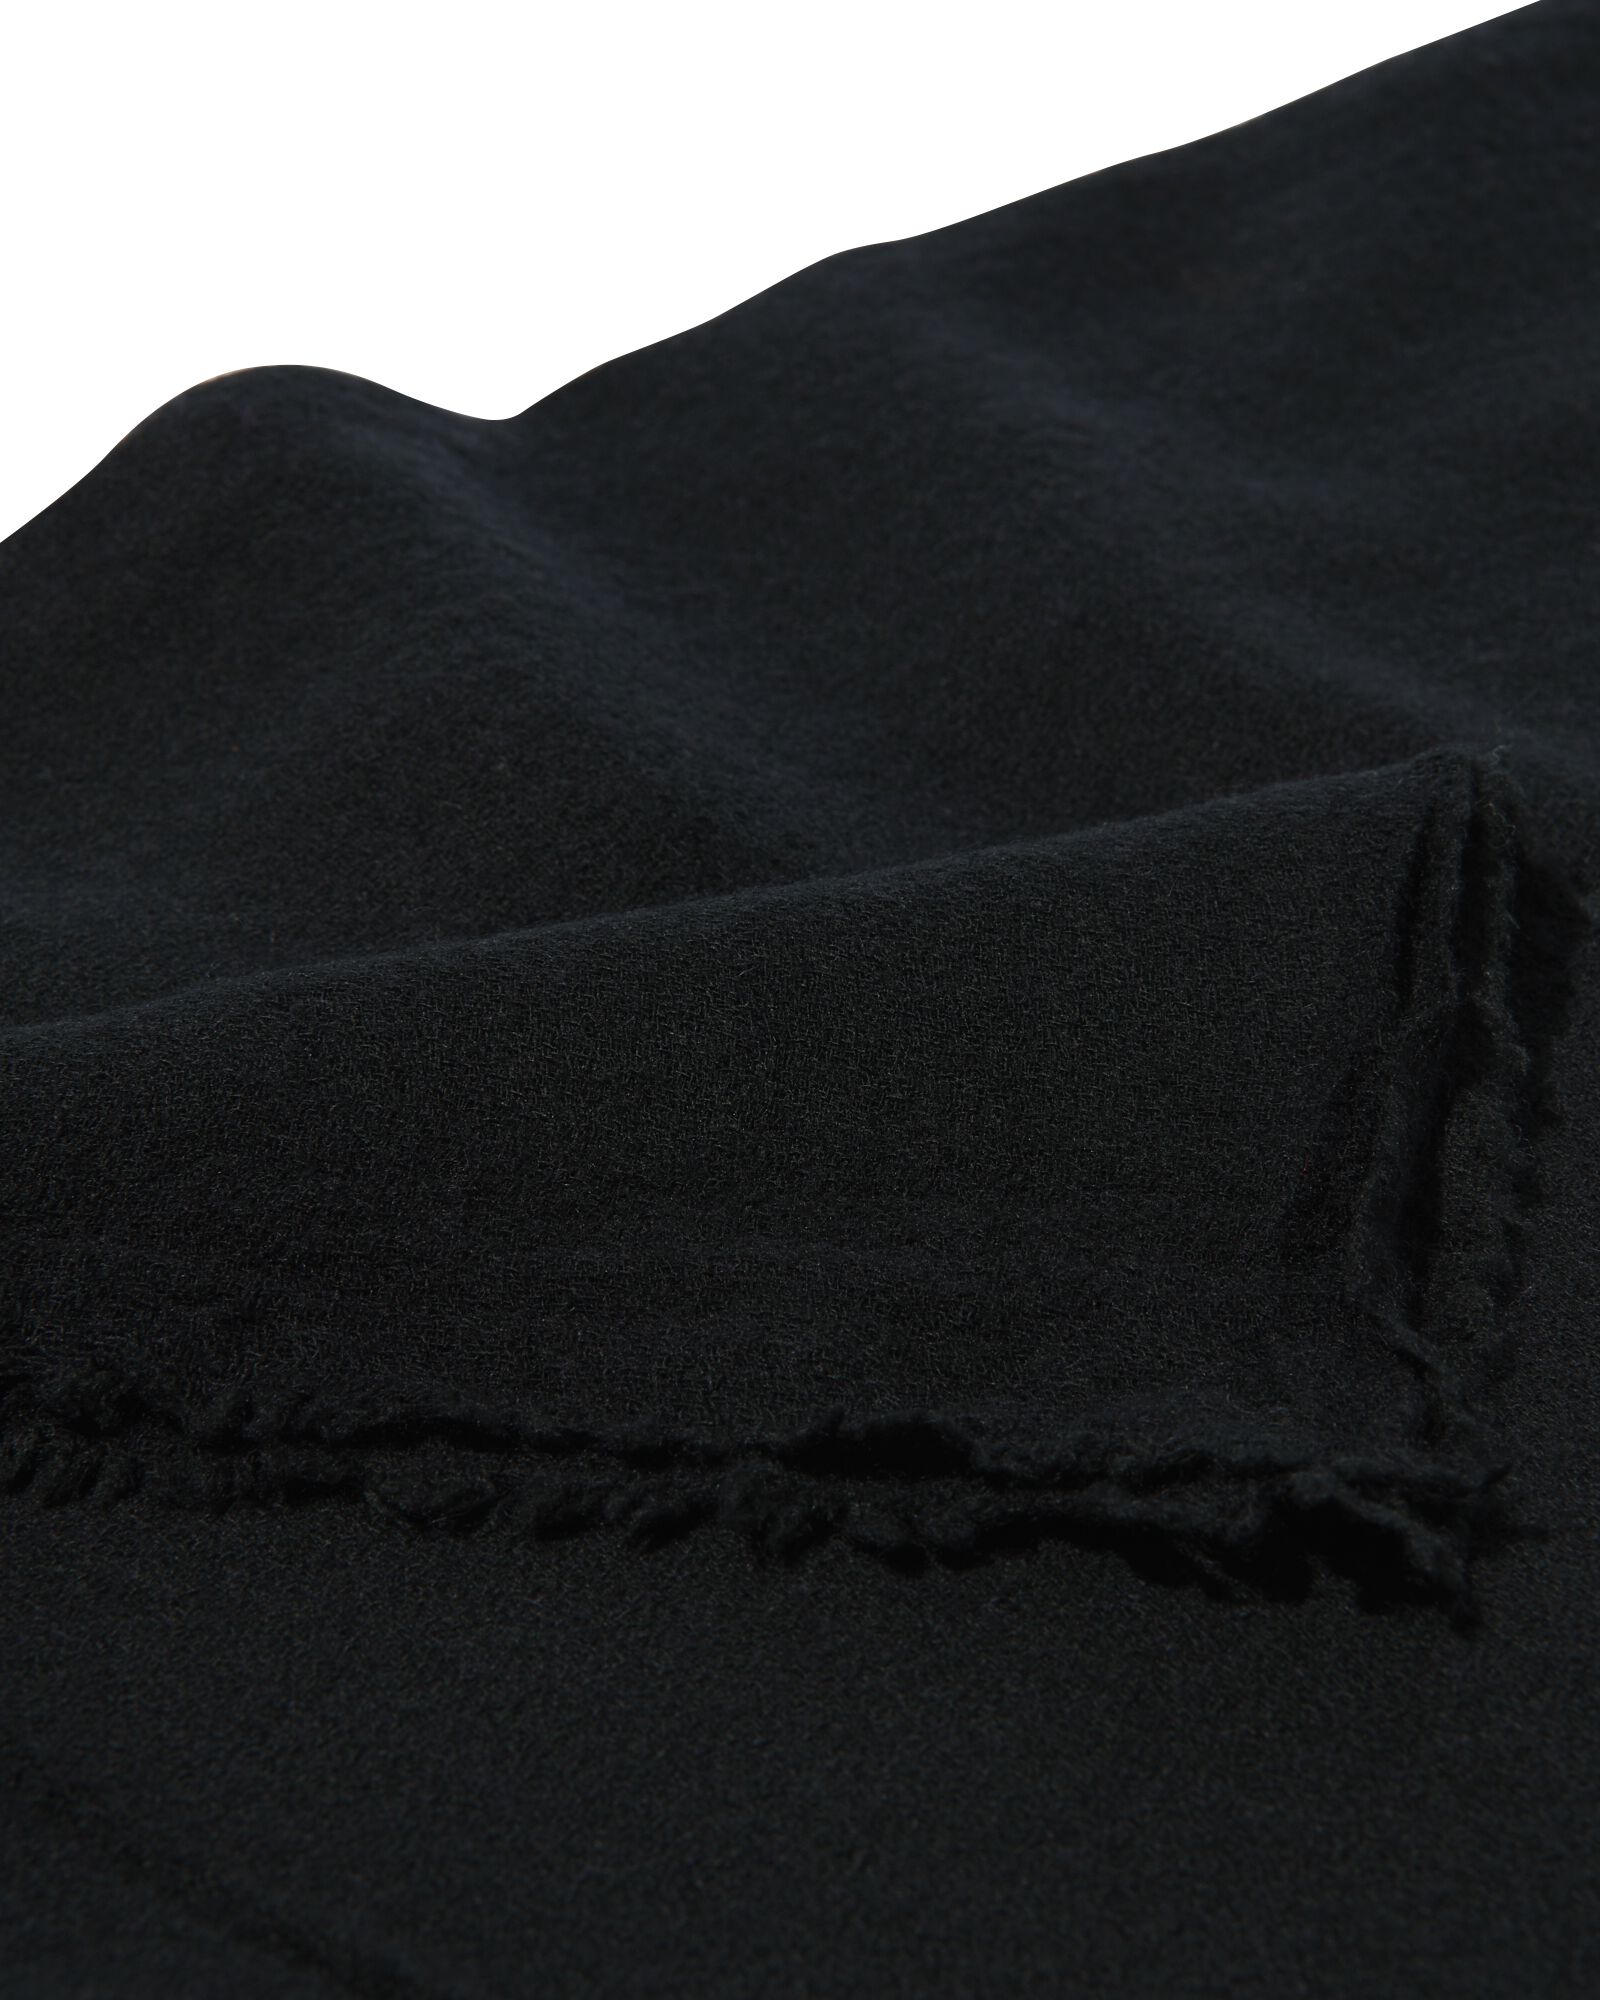 Damen-Schal mit Wolle, 200 x 60 cm, schwarz - 1790025 - HEMA